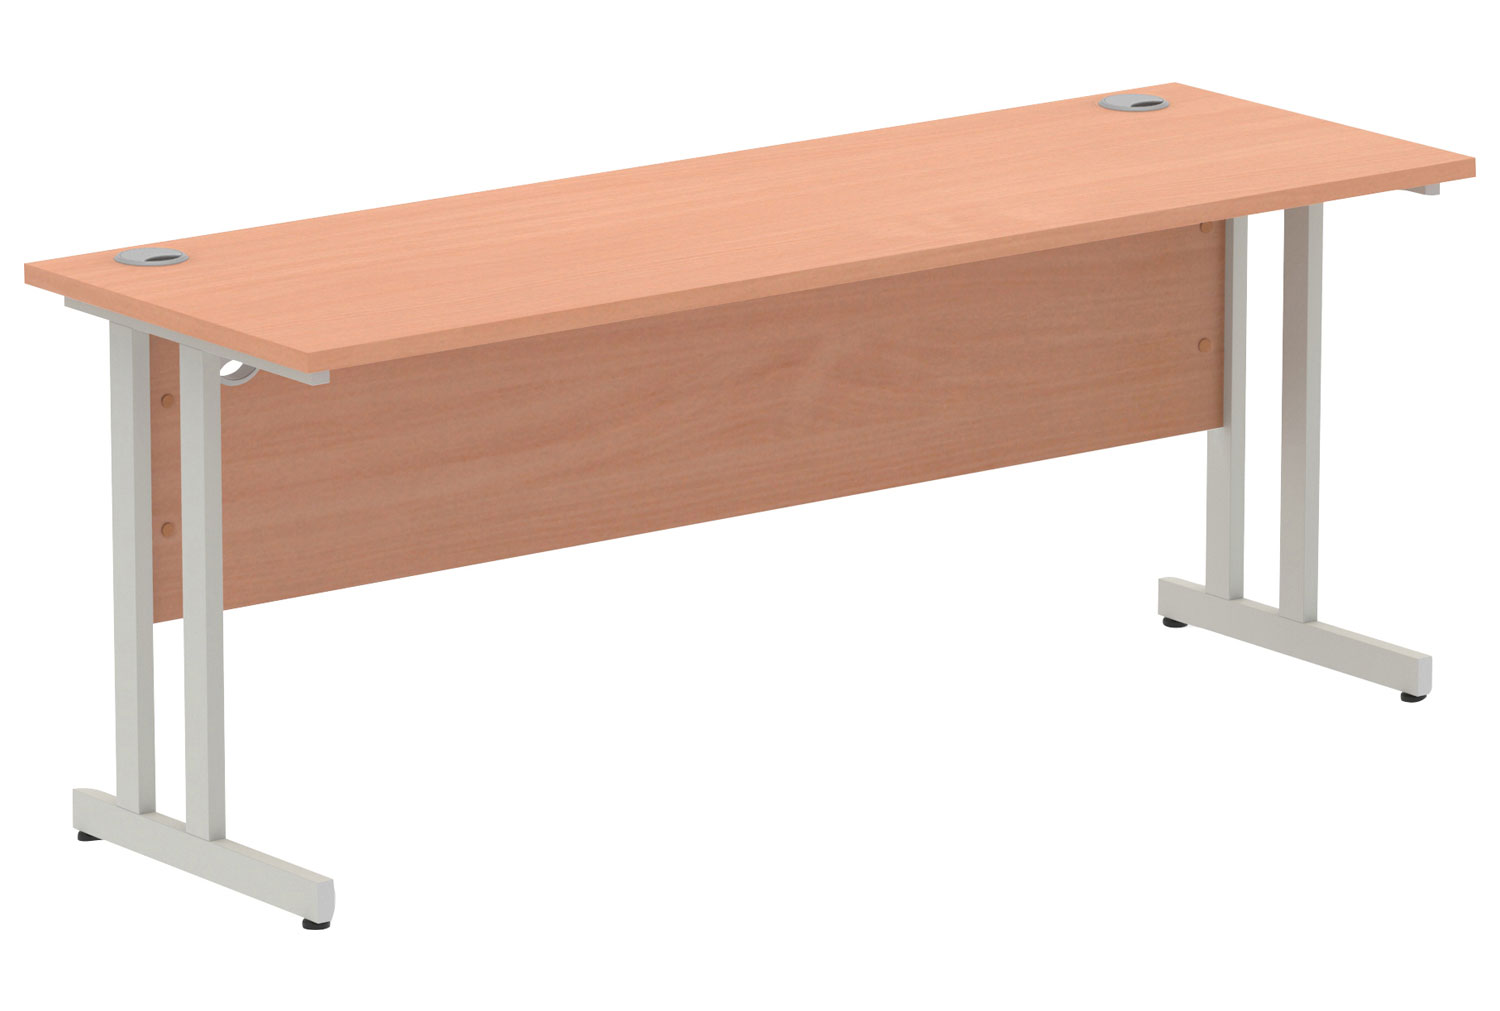 Vitali C-Leg Narrow Rectangular Office Desk (Silver Legs), 180wx60dx73h (cm), Beech